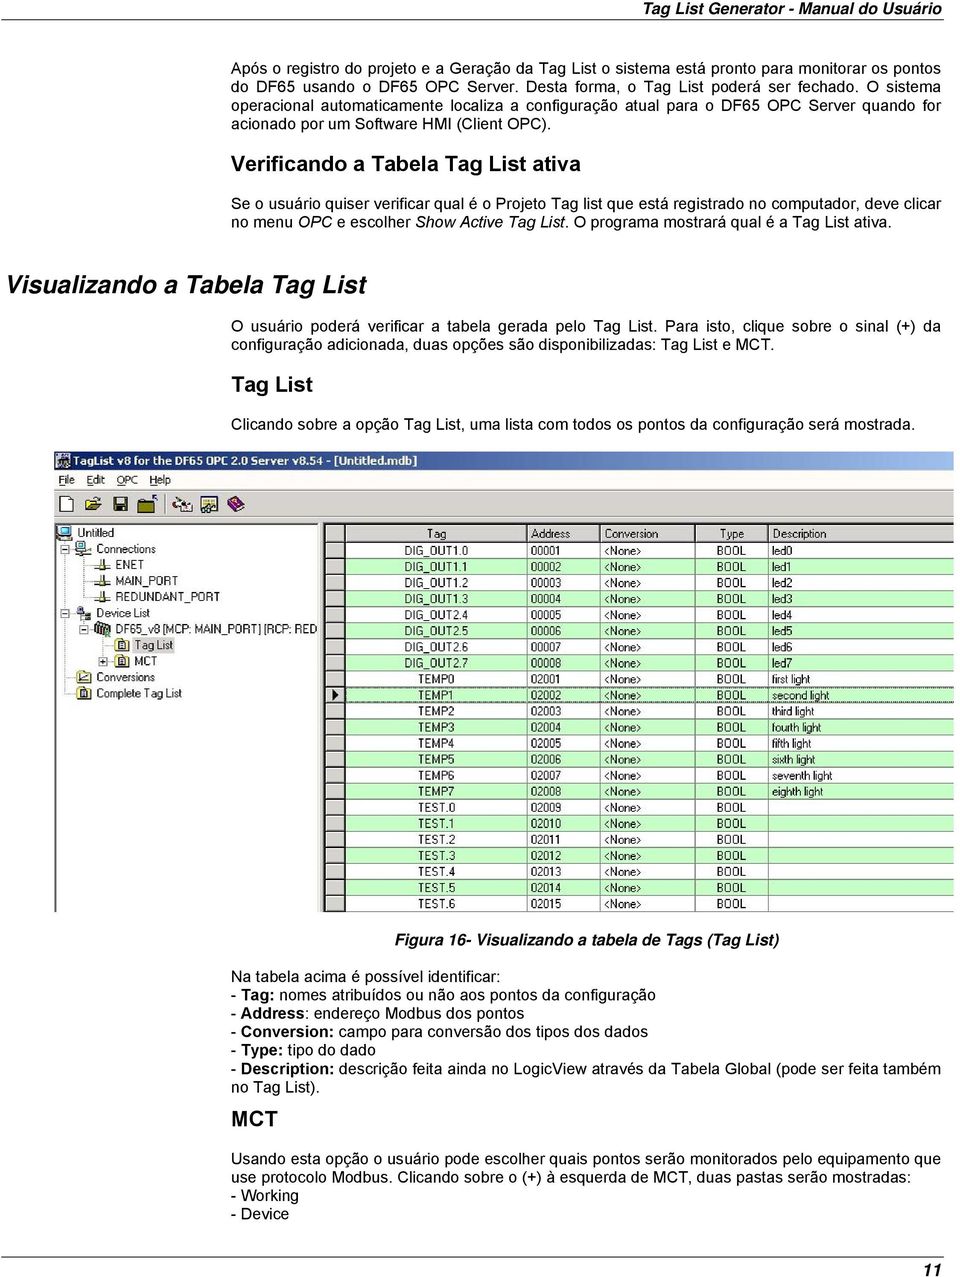 Verificando a Tabela Tag List ativa Se o usuário quiser verificar qual é o Projeto Tag list que está registrado no computador, deve clicar no menu OPC e escolher Show Active Tag List.